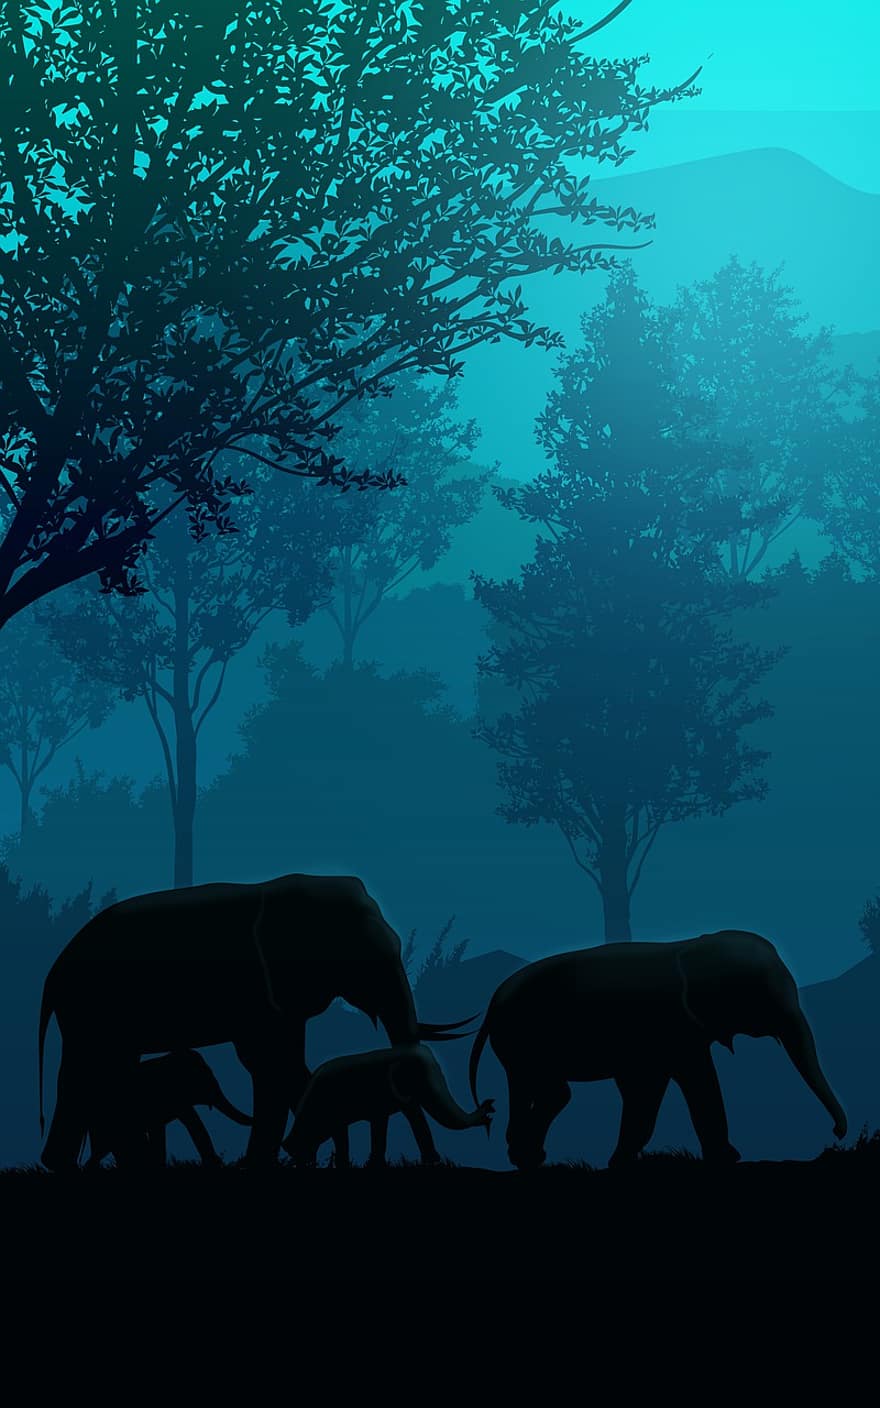 tramonto, elefante, animale, cavallo, silhouette, natura, paesaggio, albero, cielo, safari, selvaggio